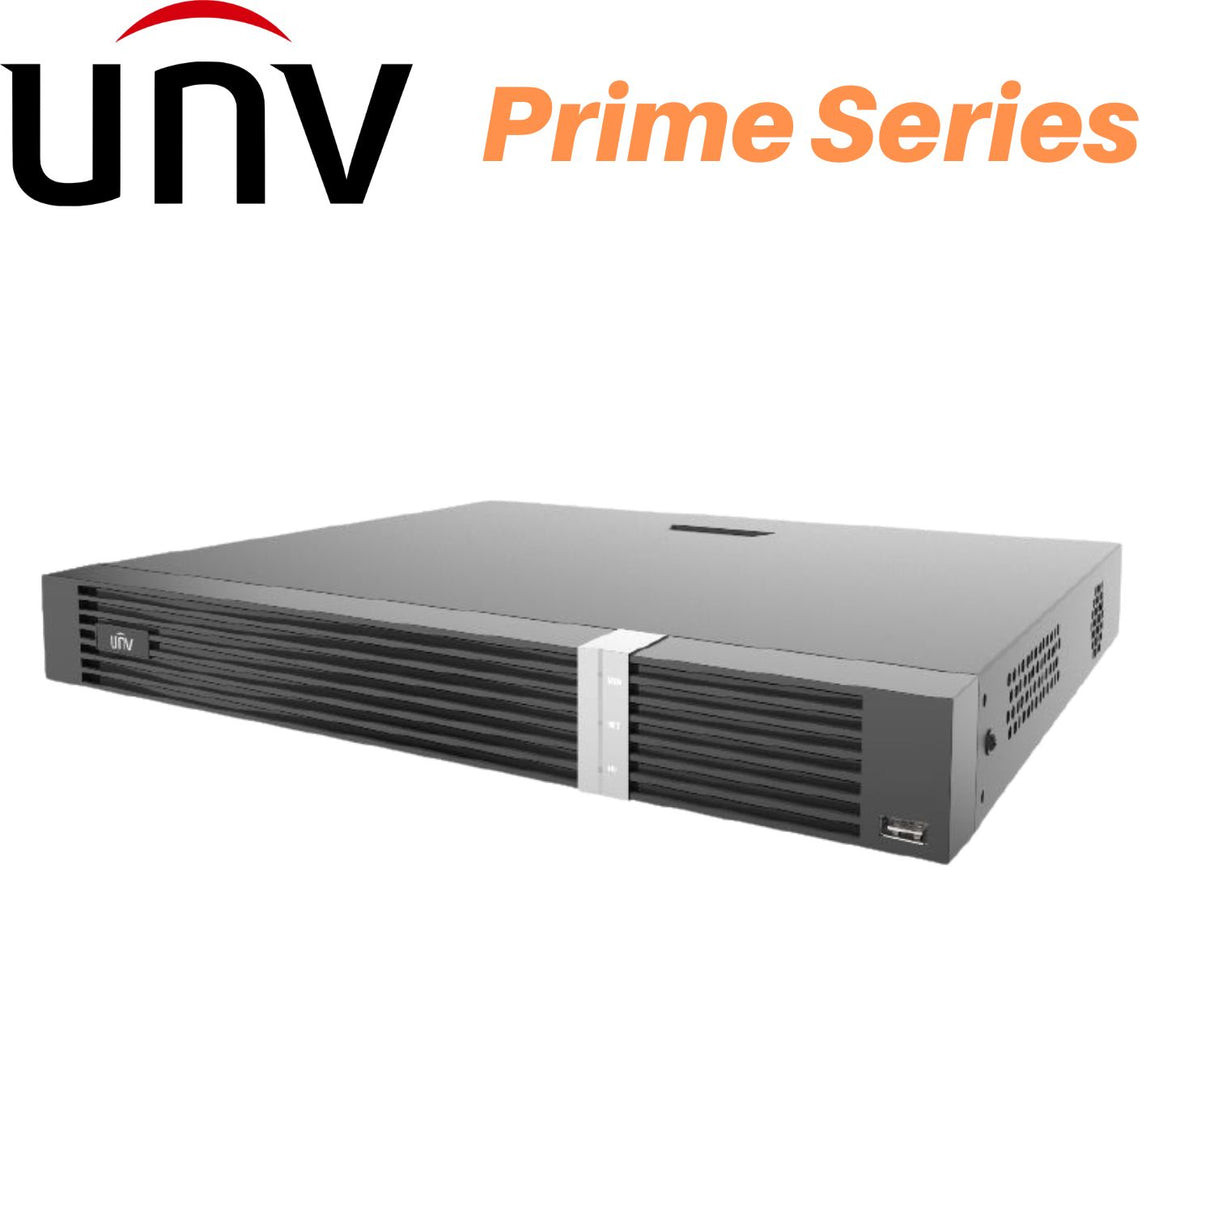 Univew Network Video Recorder: 9 Channel Prime - UNVNVR302-09E2-IQ